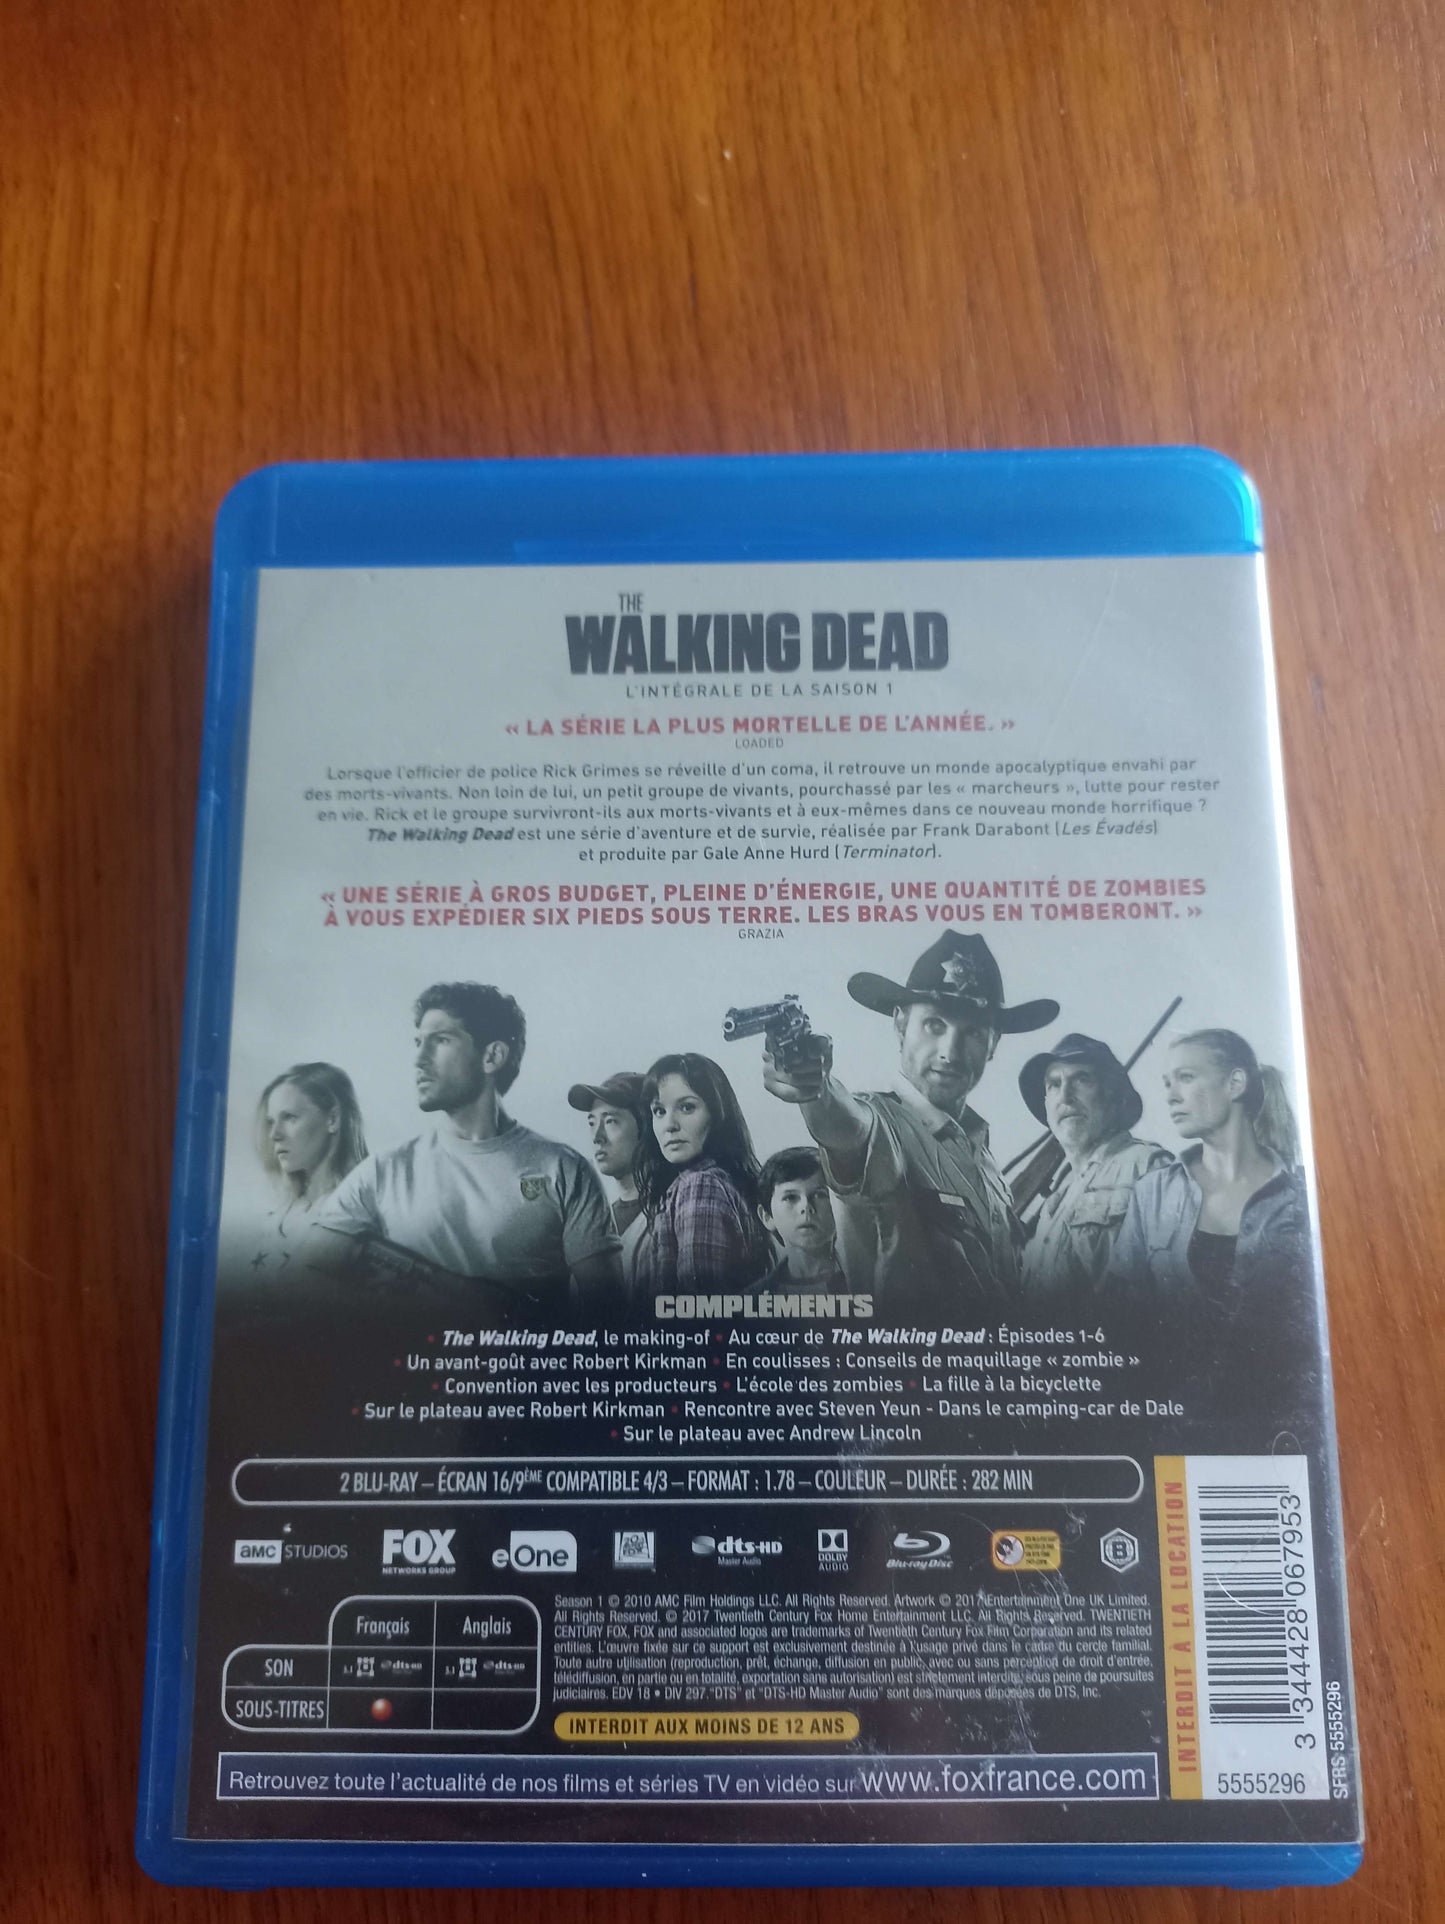 The Walking Dead Complete Season 1 Blu-ray Disc